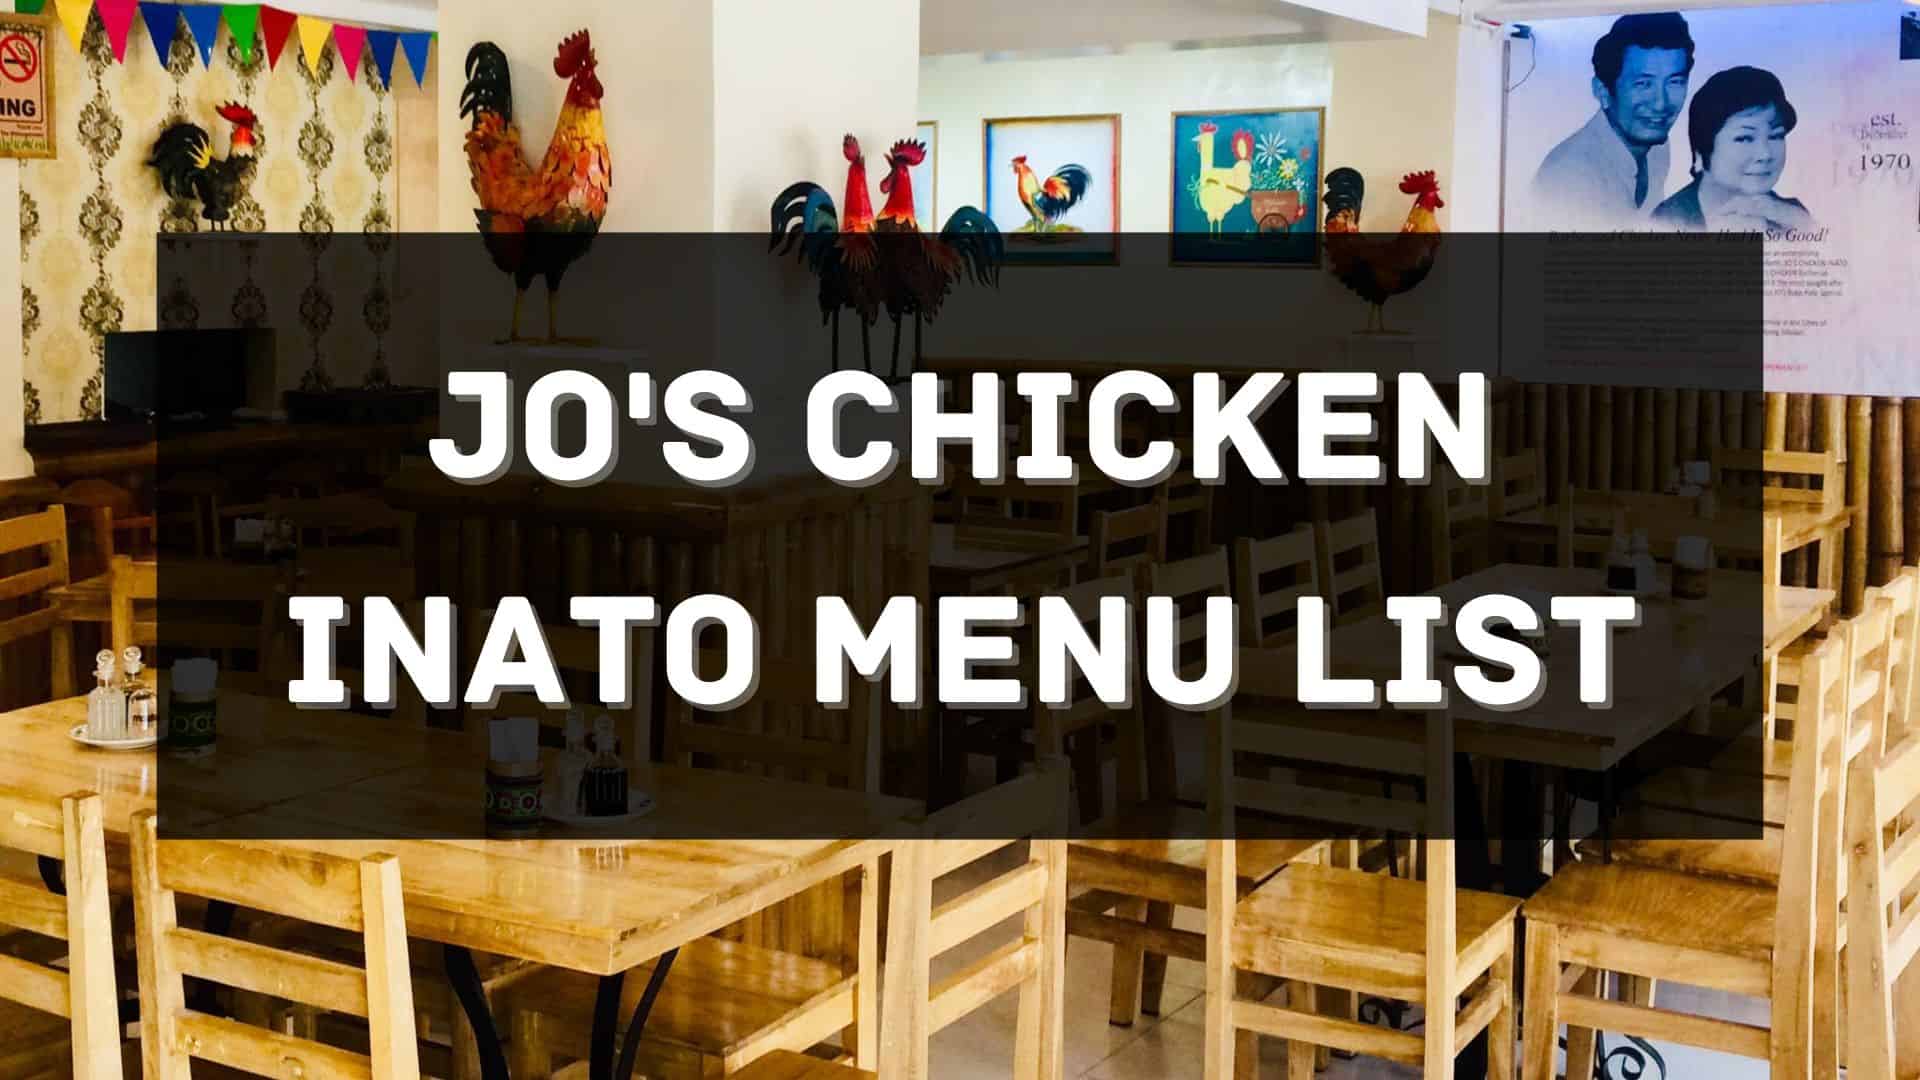 jo's chicken inato menu prices philippines